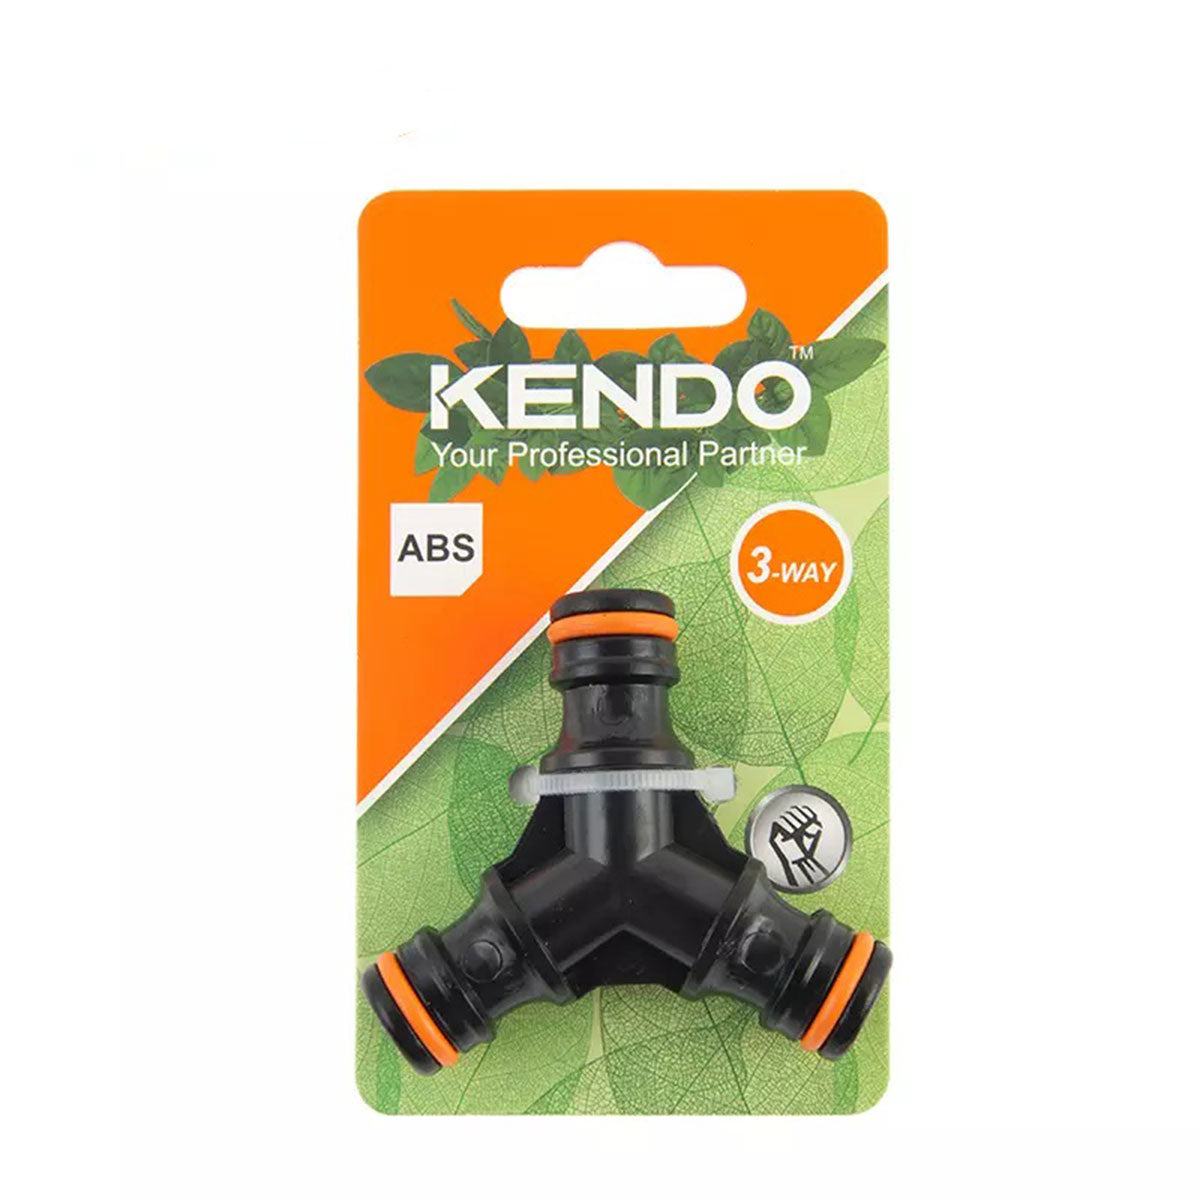 Kendo 3-Way Hose Connector